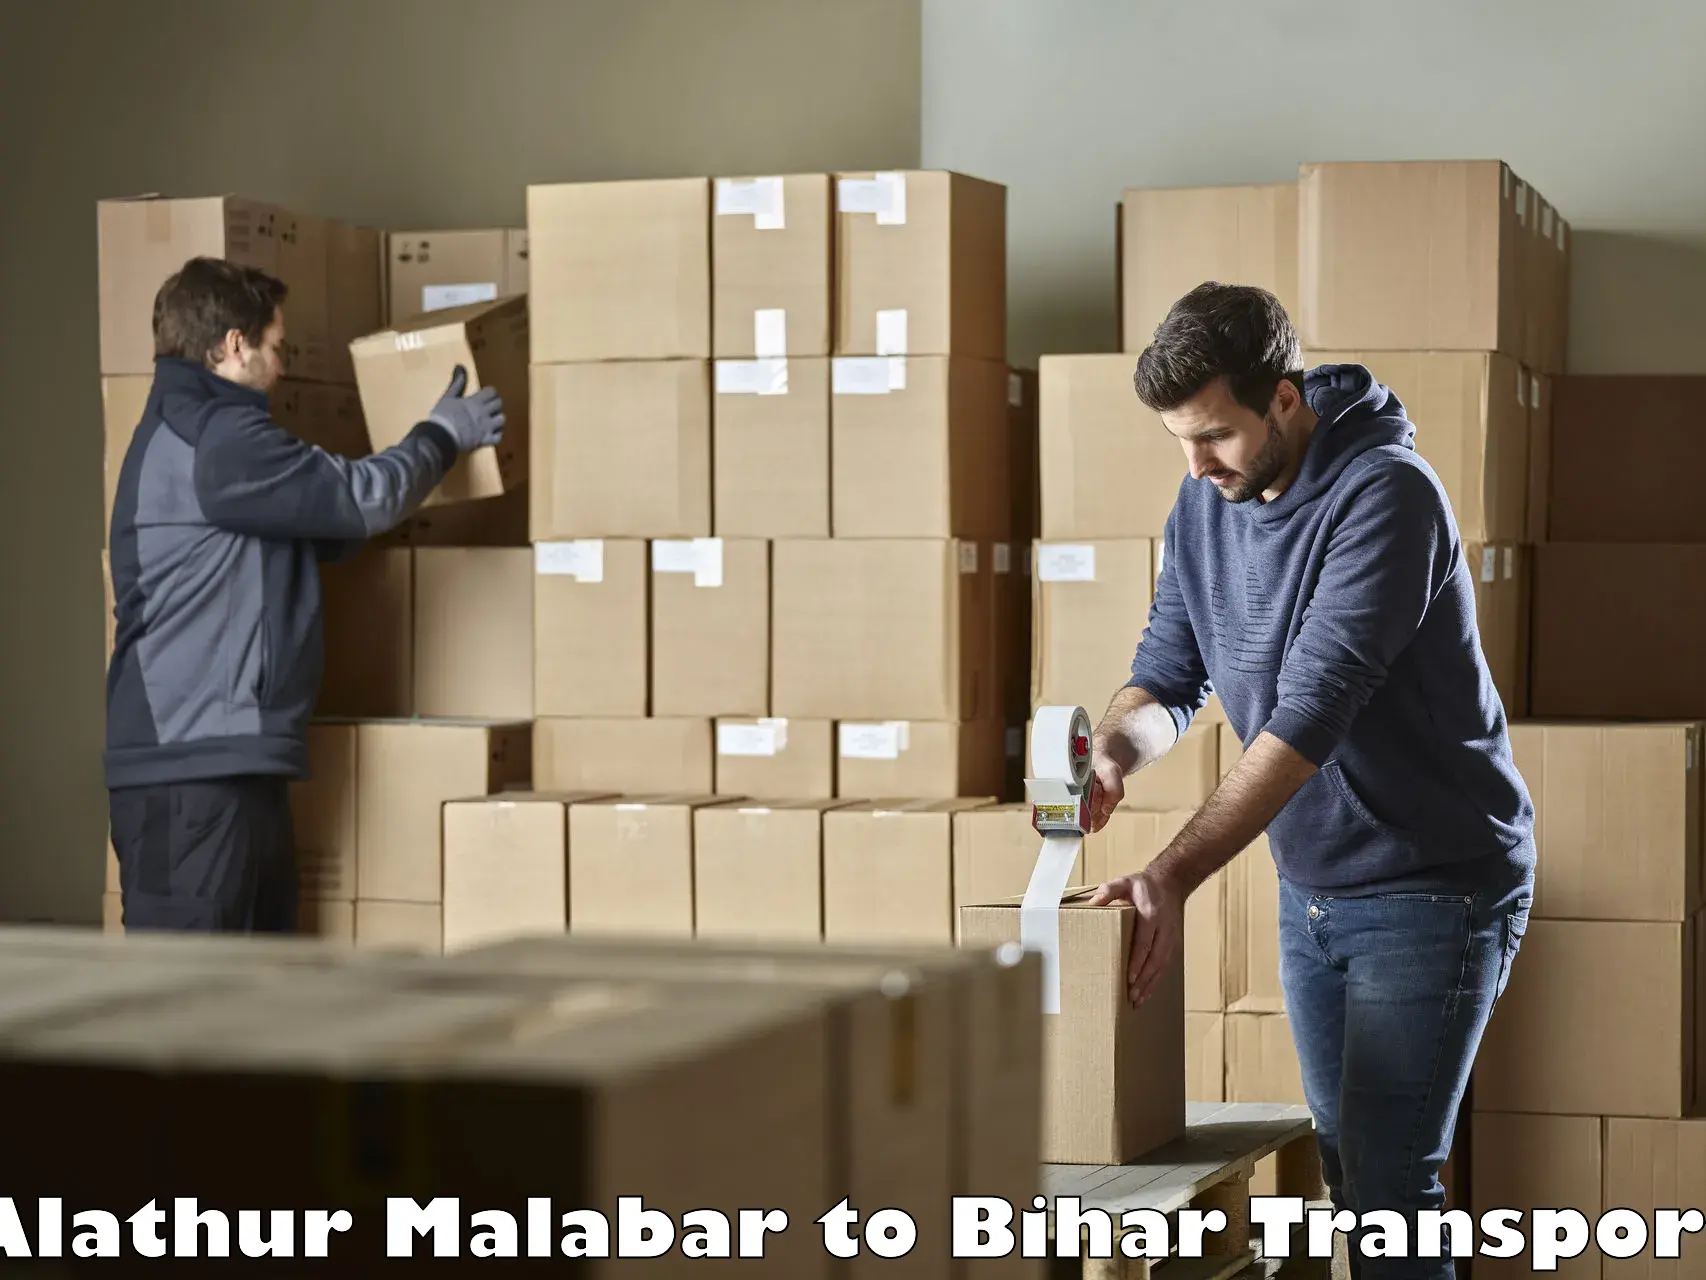 Daily transport service Alathur Malabar to Jhanjharpur